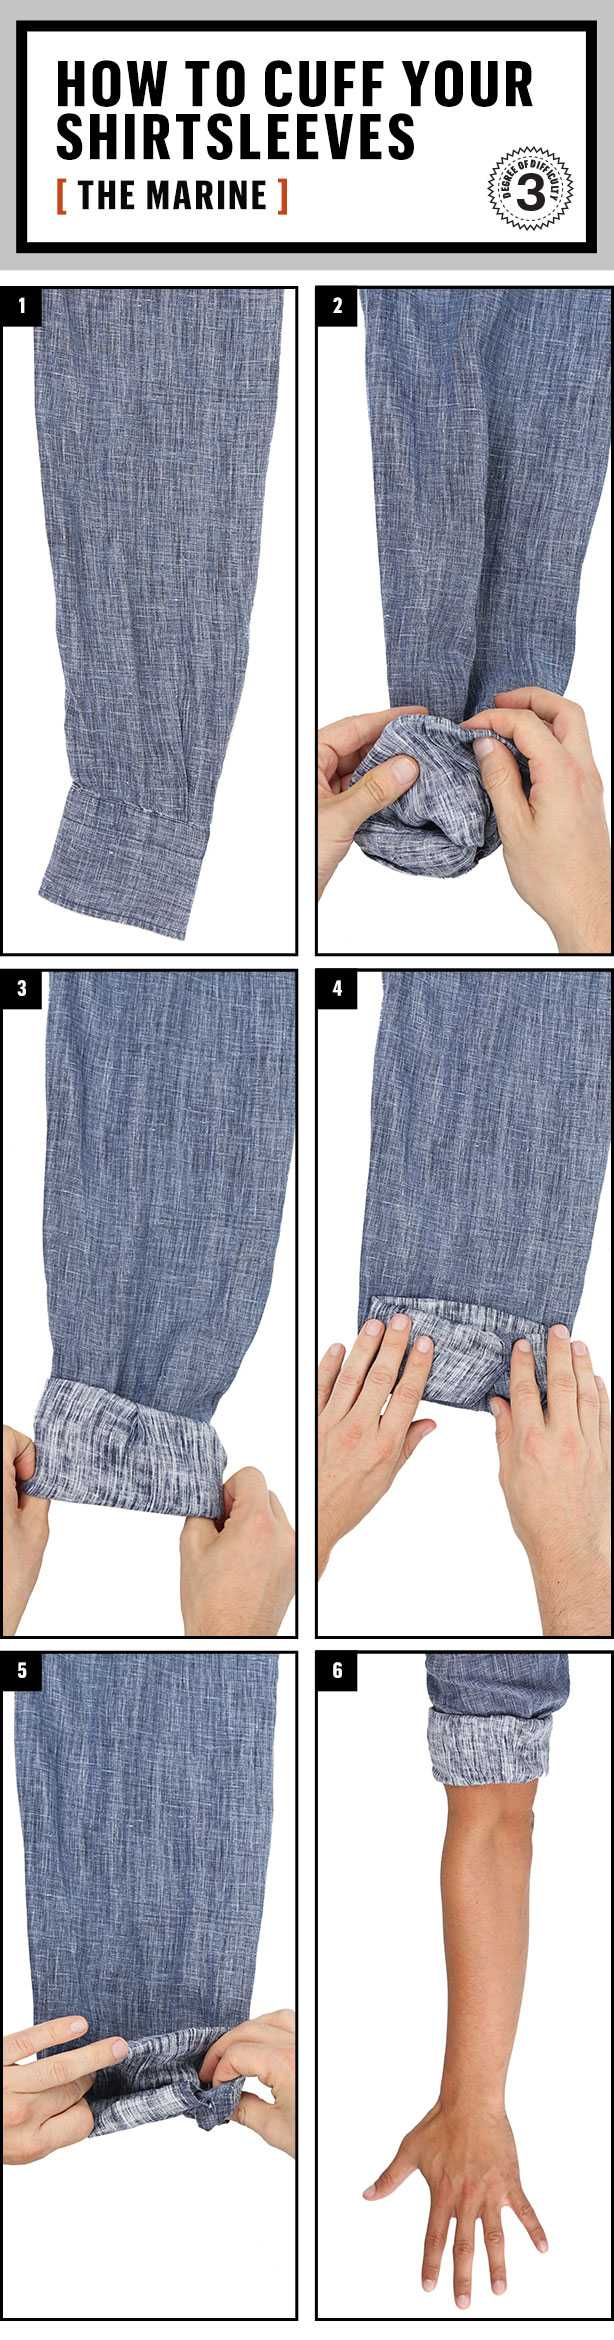 Как правильно подворачивать штаны? отвечаю